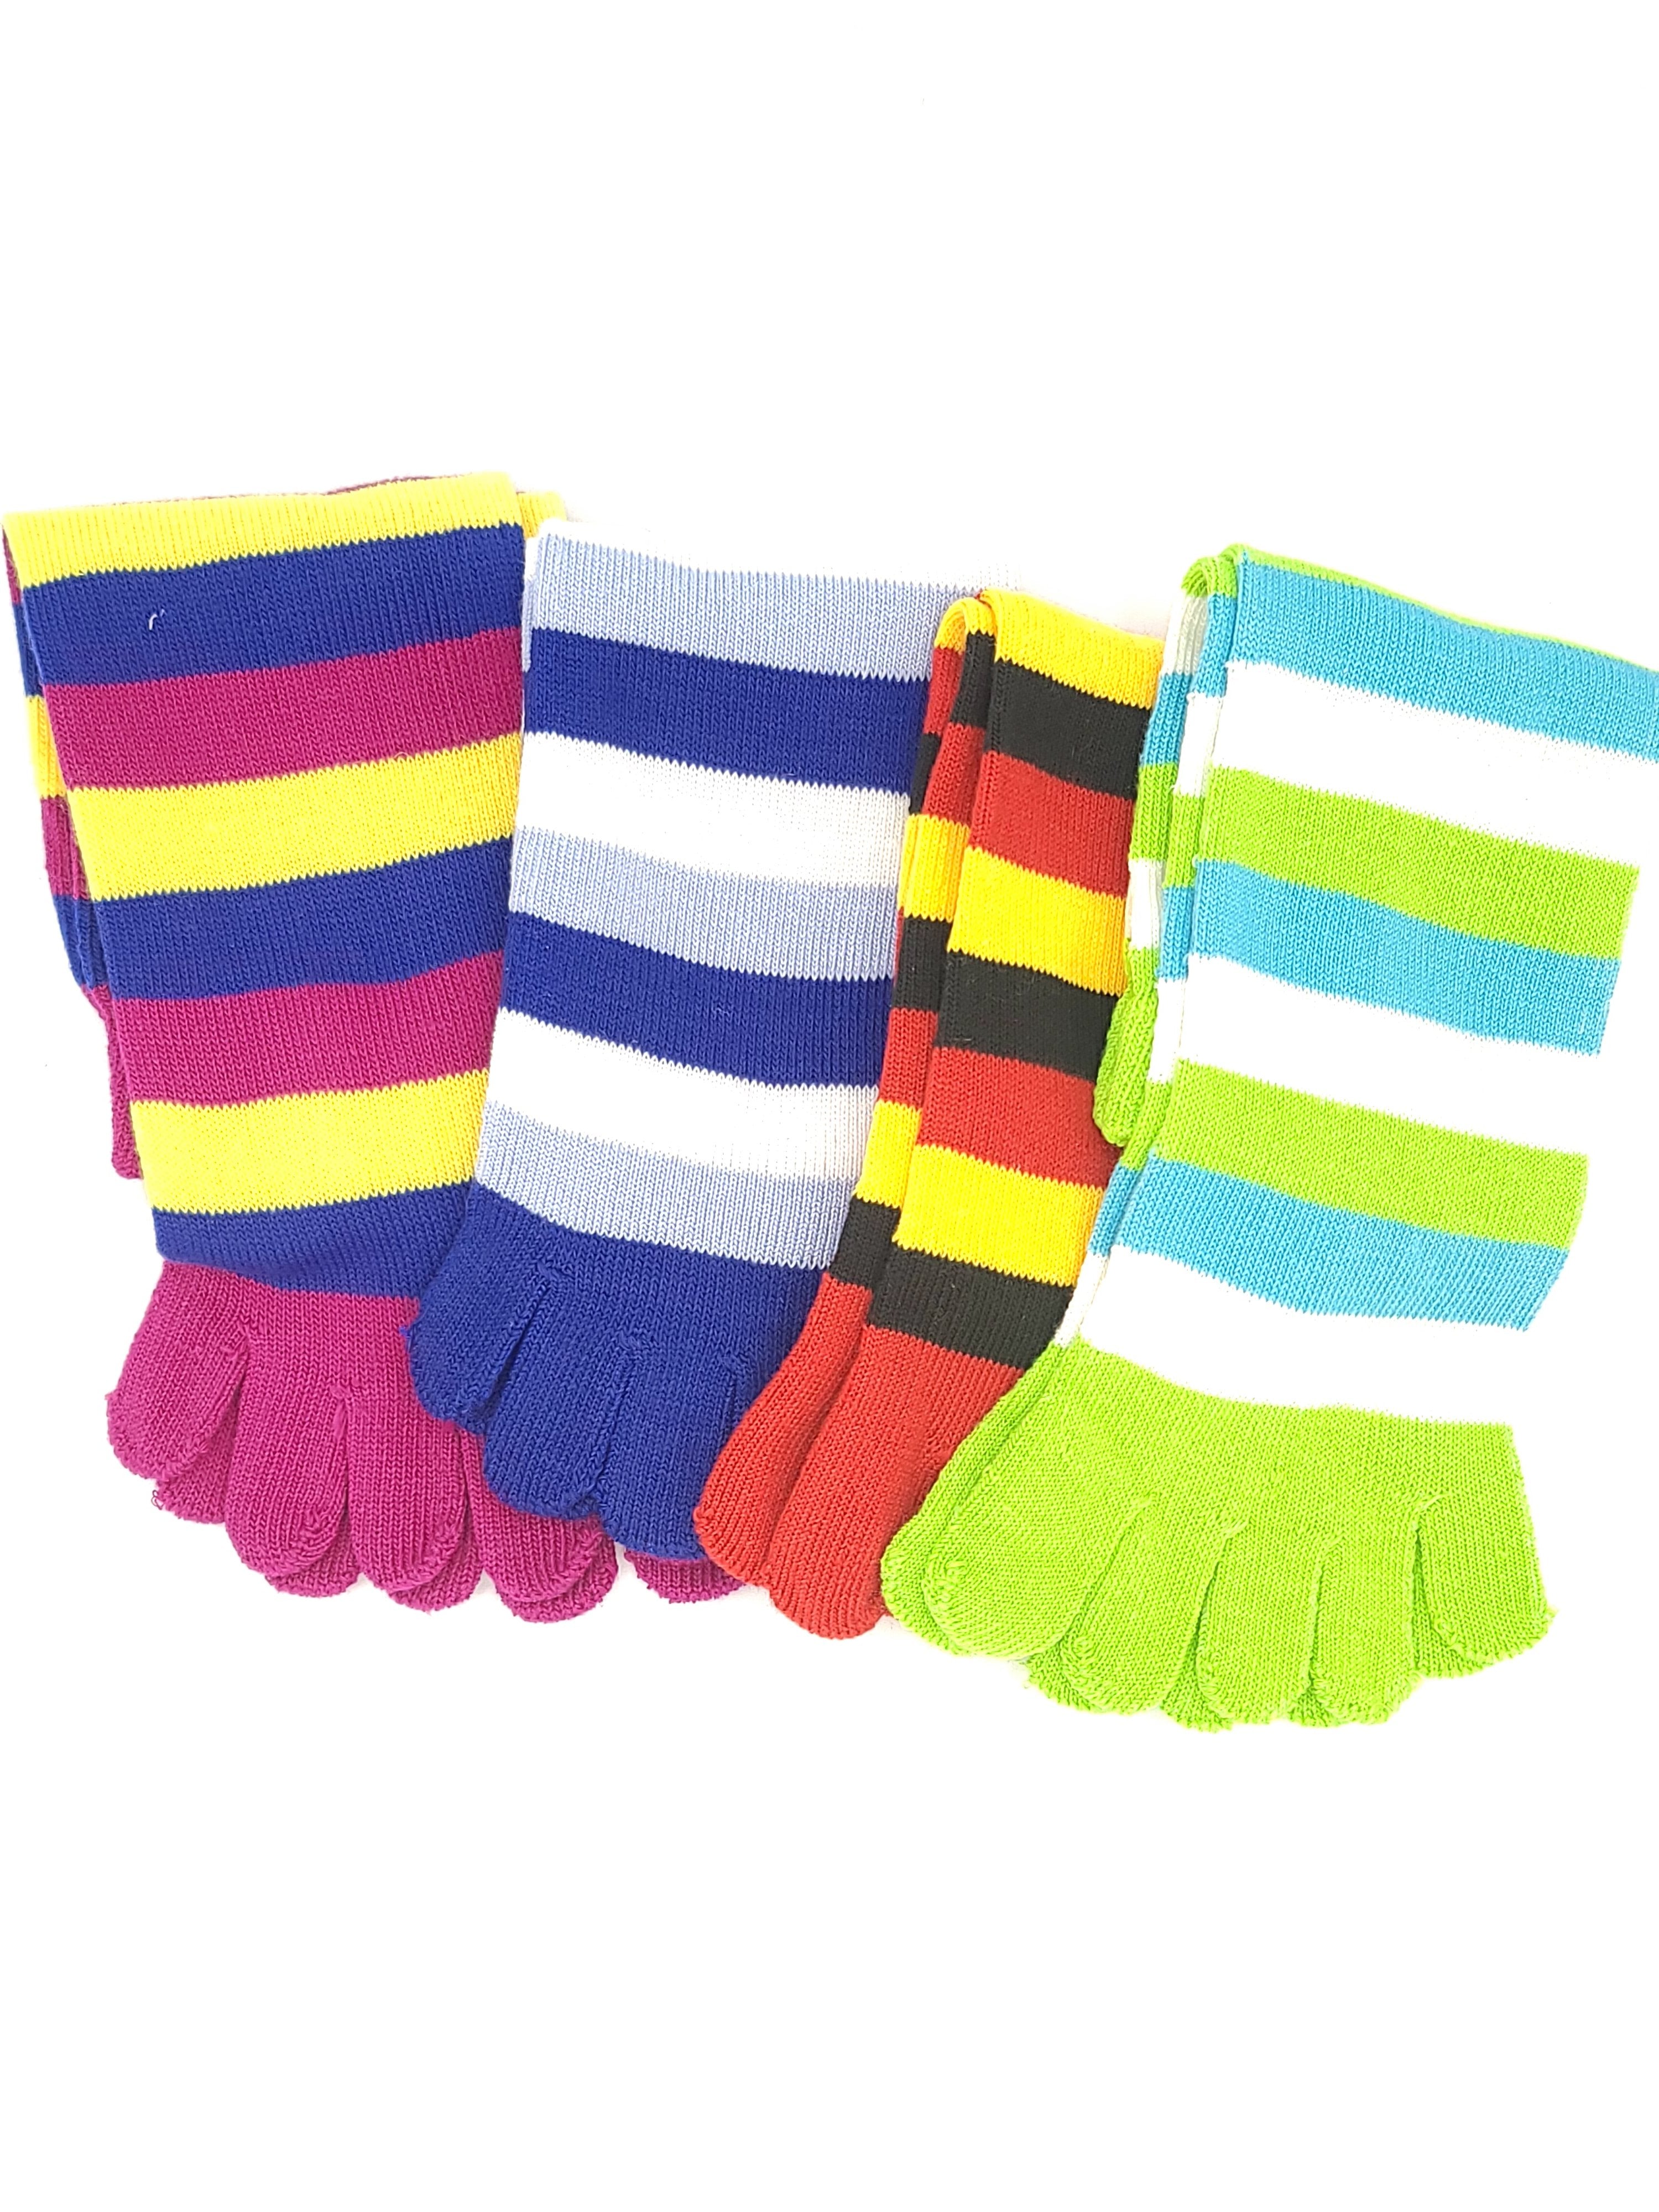 Reflexology Toe Socks (4 Pack - White)